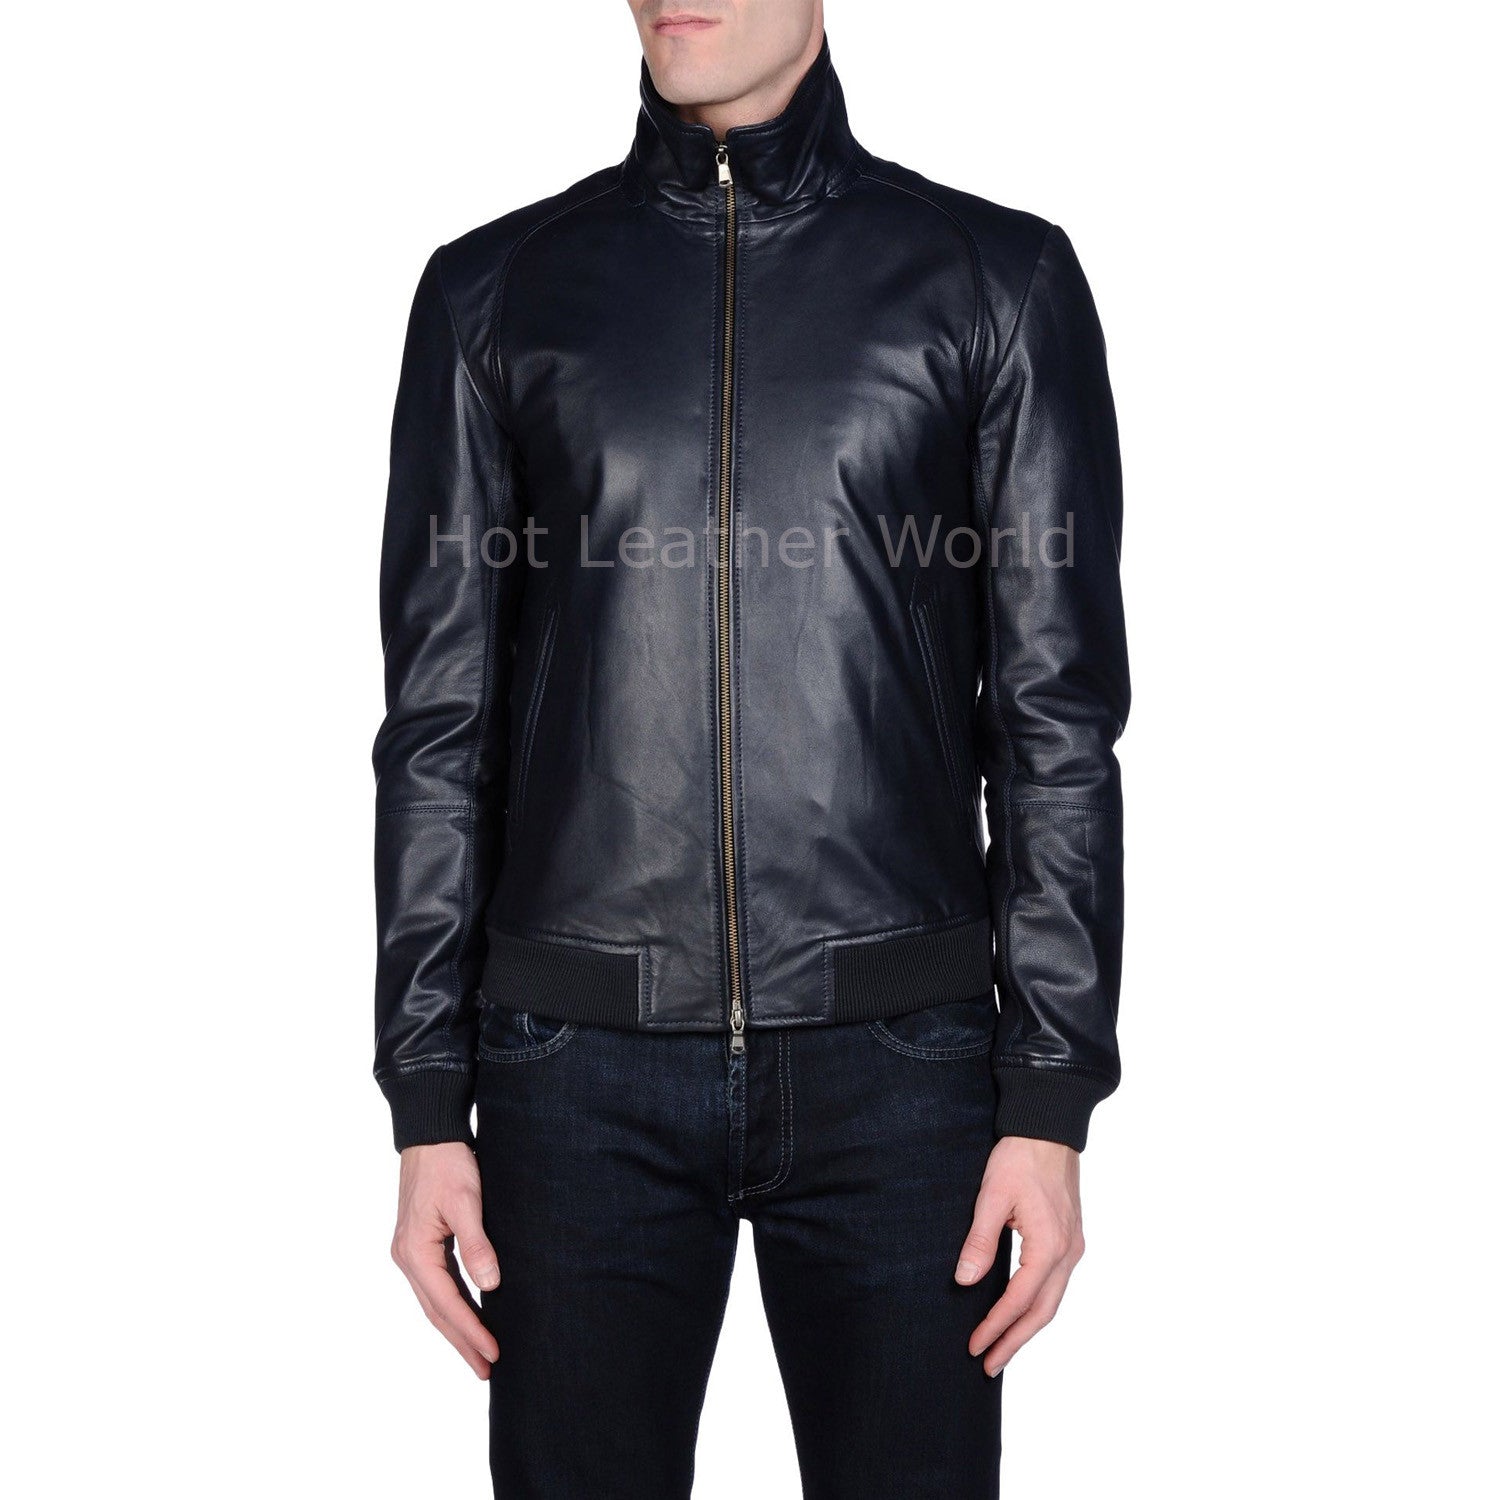 Ribbed Style Men Leather Jacket